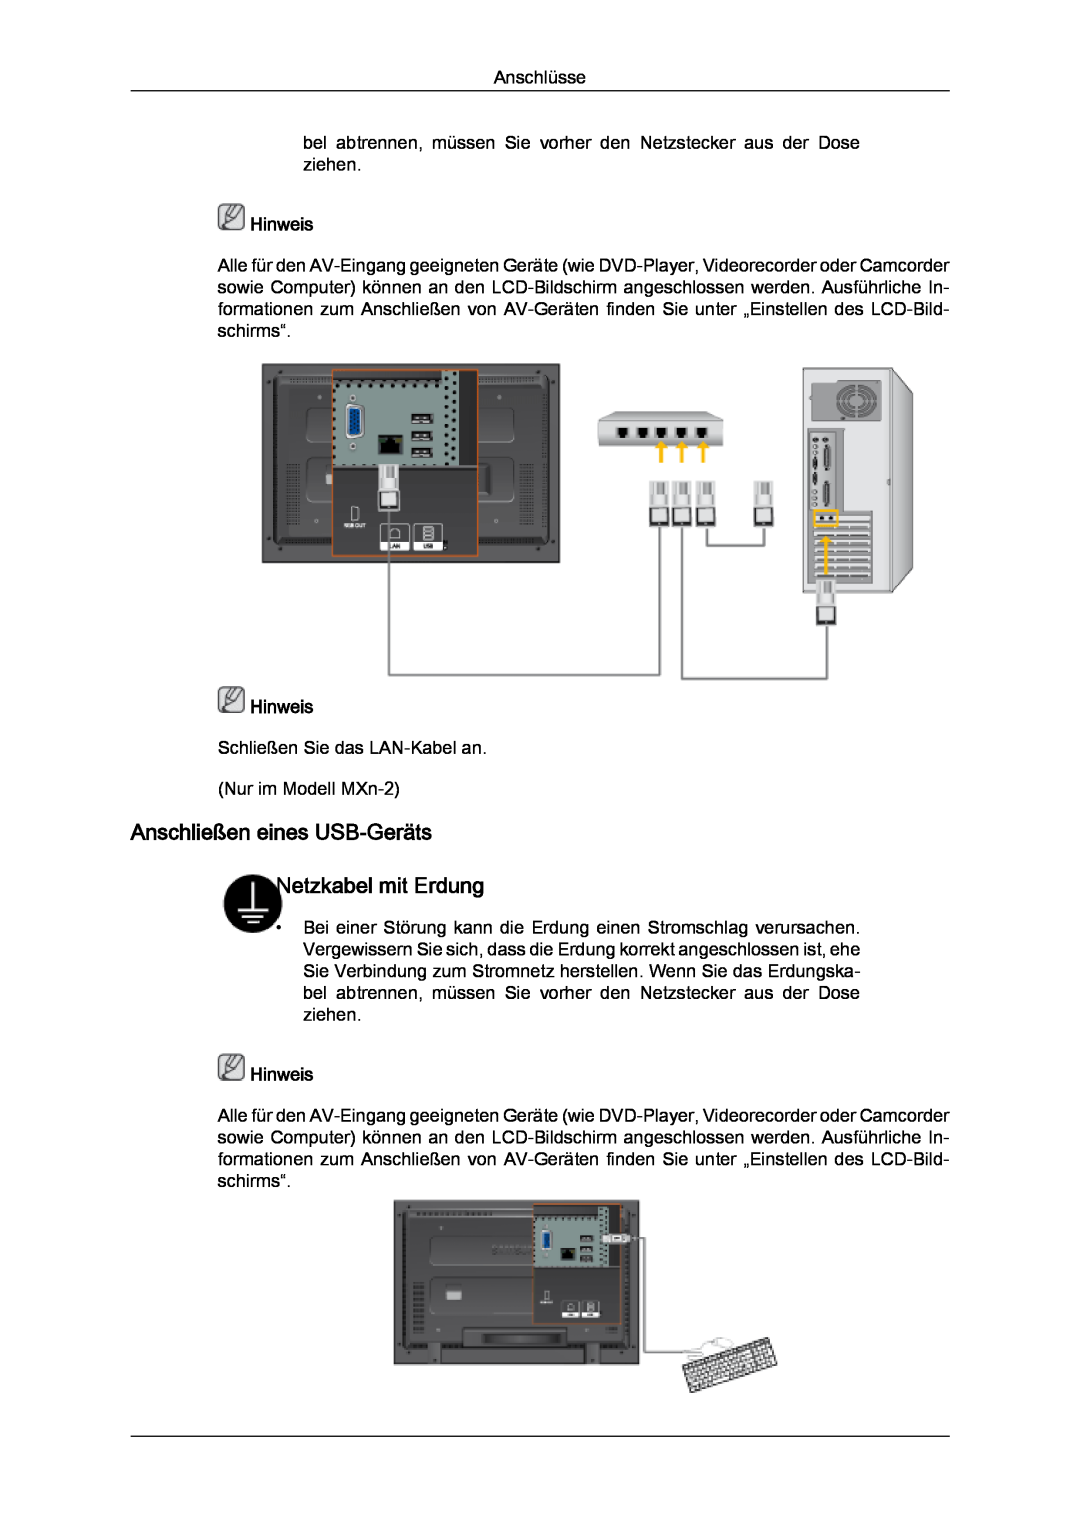 Samsung LH32MGULBC/EN, LH32MGQLBC/EN, LH32MGQPBC/EN manual Anschließen eines USB-Geräts Netzkabel mit Erdung, Hinweis 